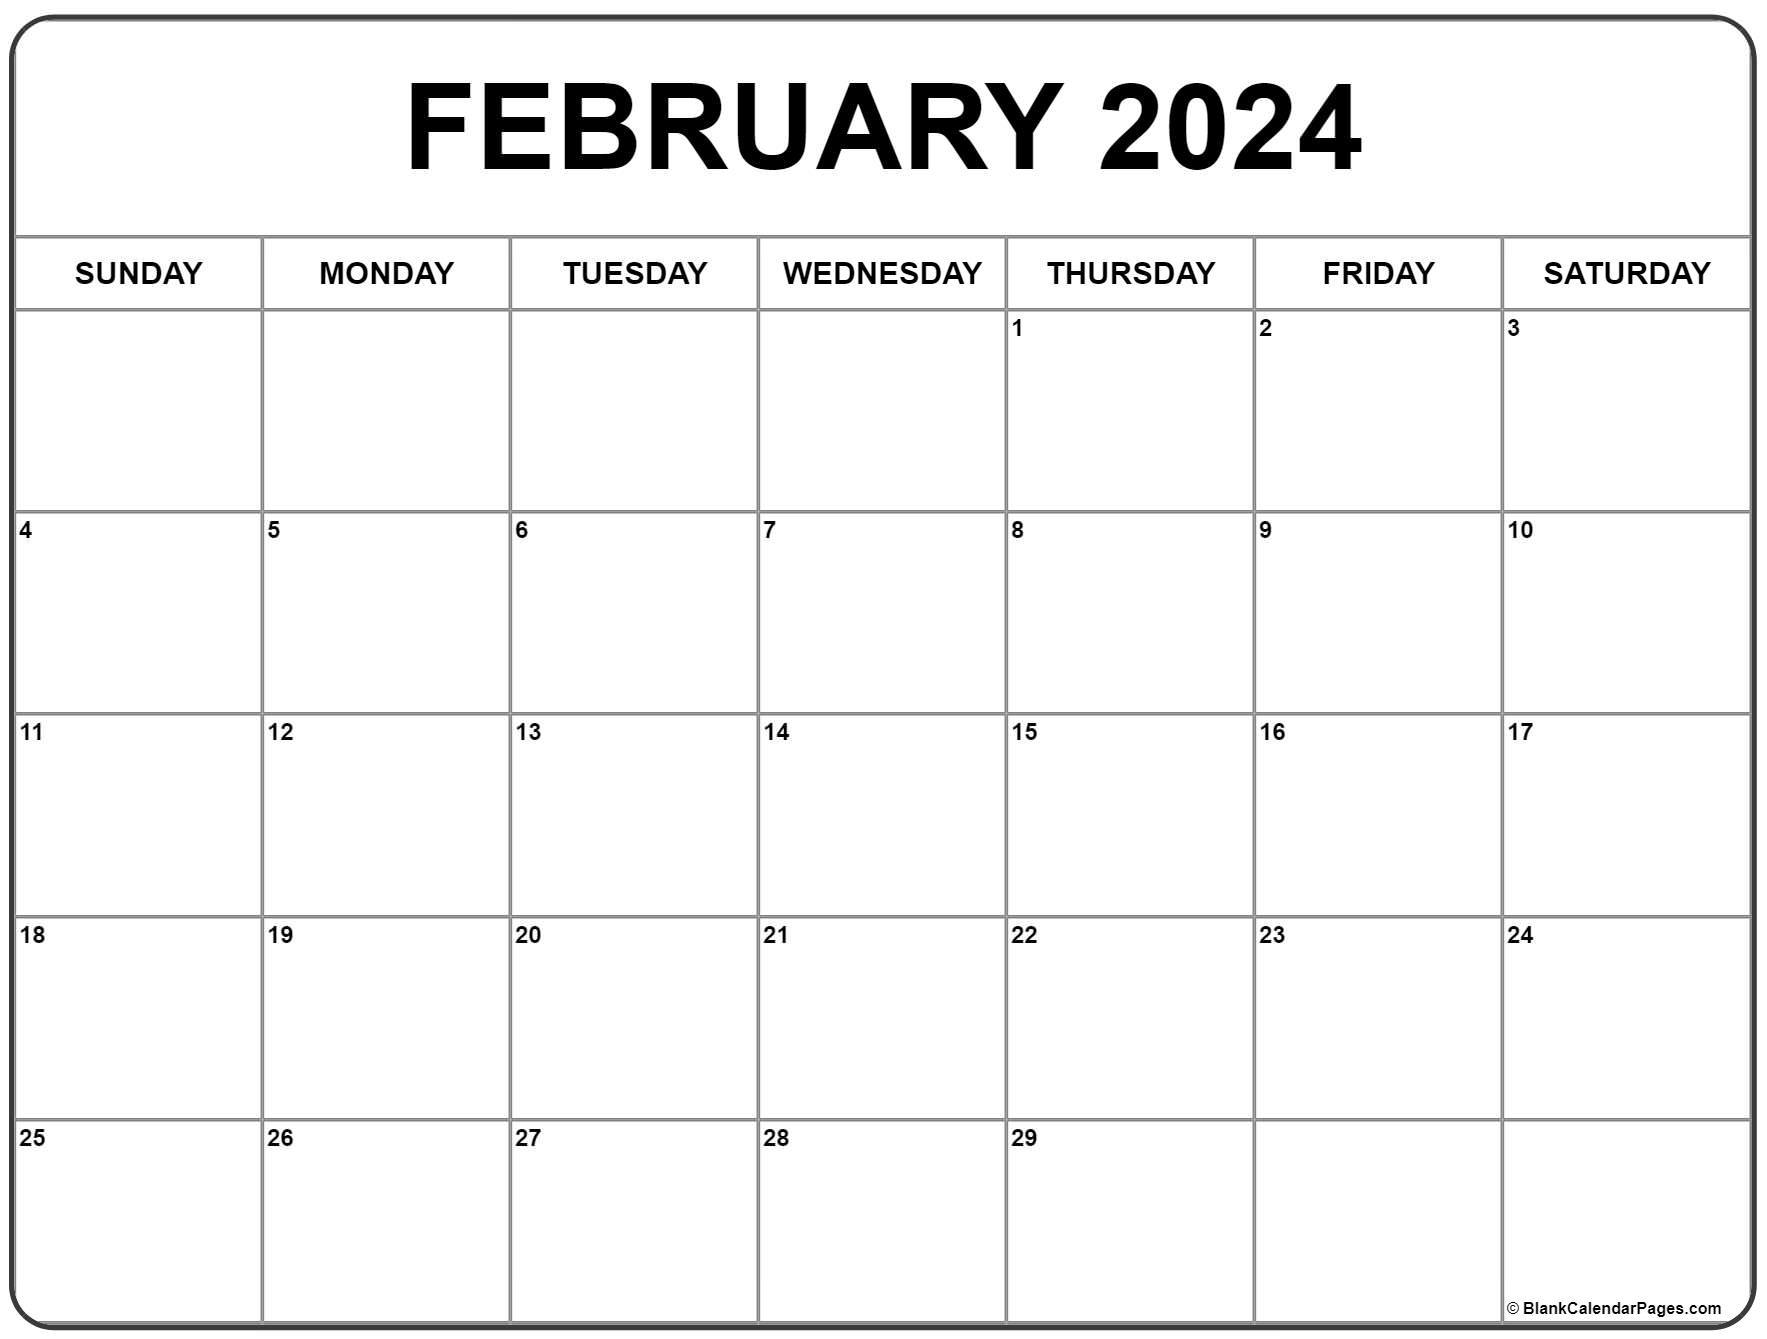 February 2024 Calendar | Free Printable Calendar throughout Free Printable Blank 2024 Calendar